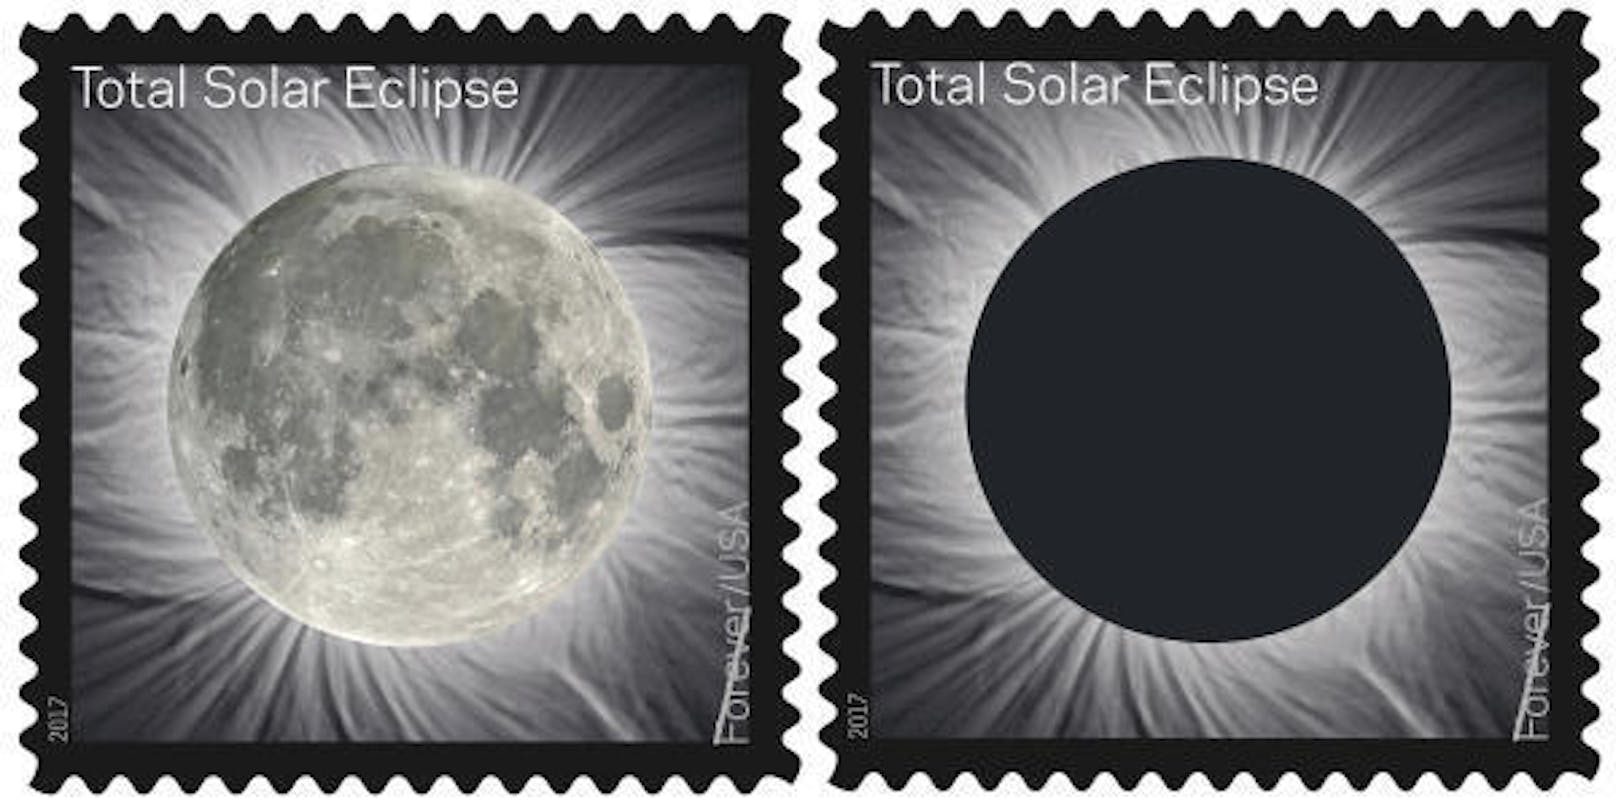 Die "Great American Solar Eclipse" (die große amerikanische Sonnenfinsternis) wirft seit Monaten ihre Schatten voraus. Das hat nicht nur Wissenschaft und Normalbürger, sondern auch allerlei Wirrköpfe auf den Plan gerufen. (Im Bild: US-Briefmarken zum Jahrhundertereignis)